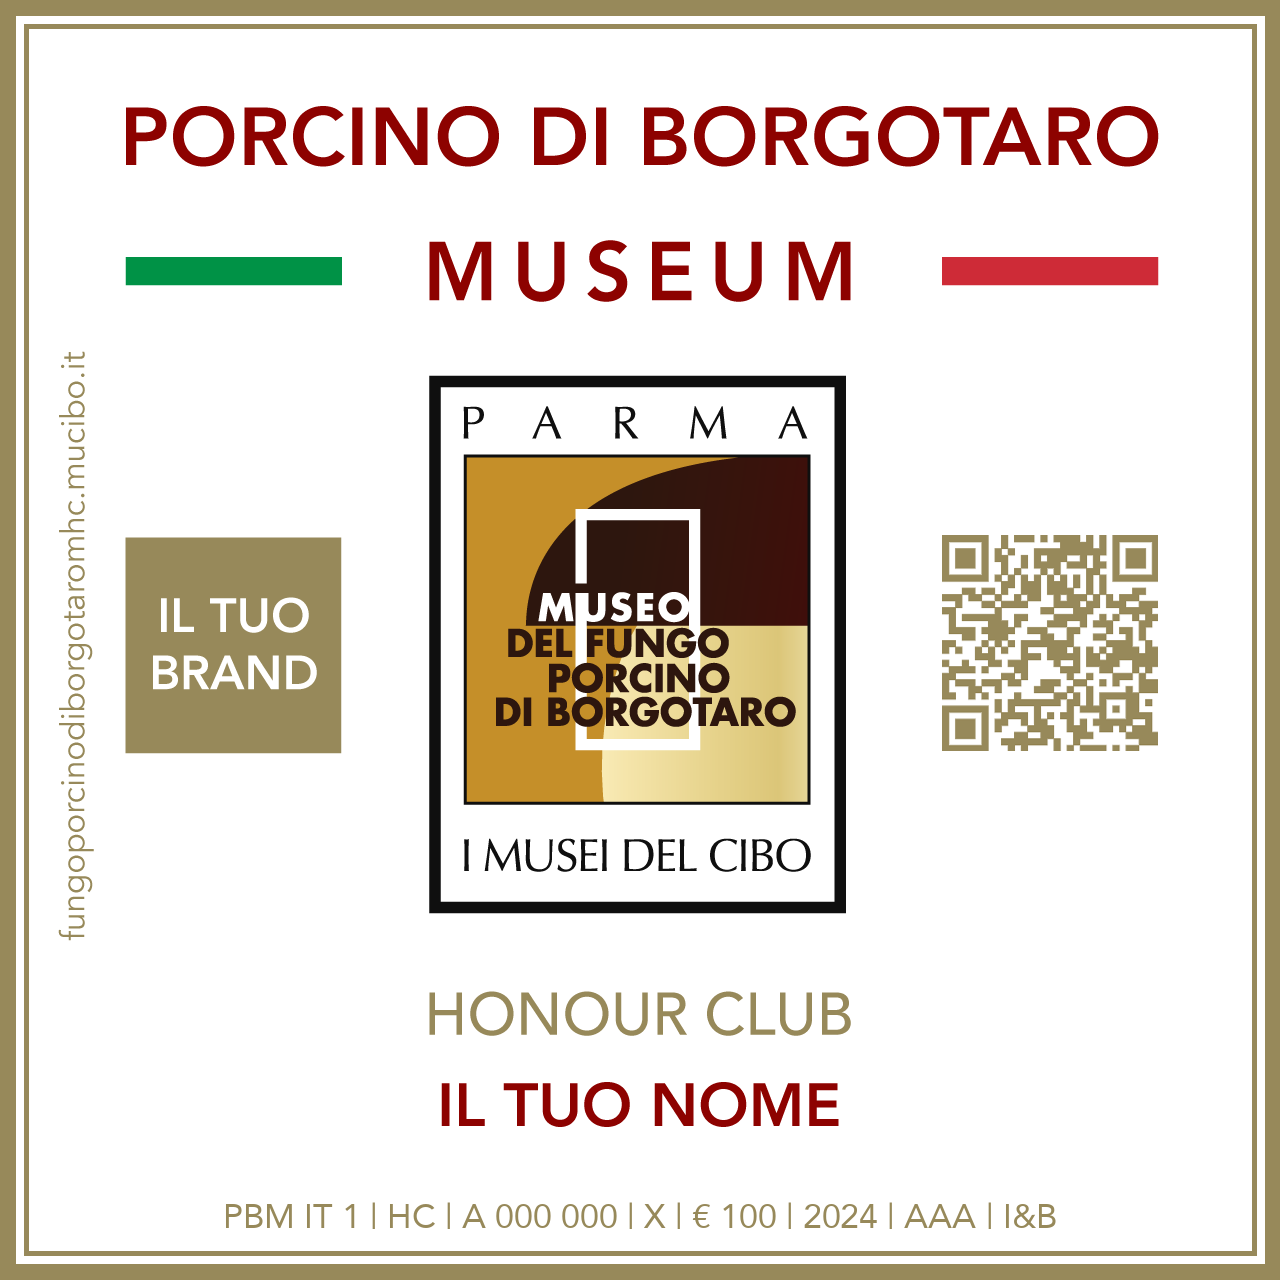 Fungo Porcino di Borgotaro Museum Honour Club - Token - IL TUO BRAND